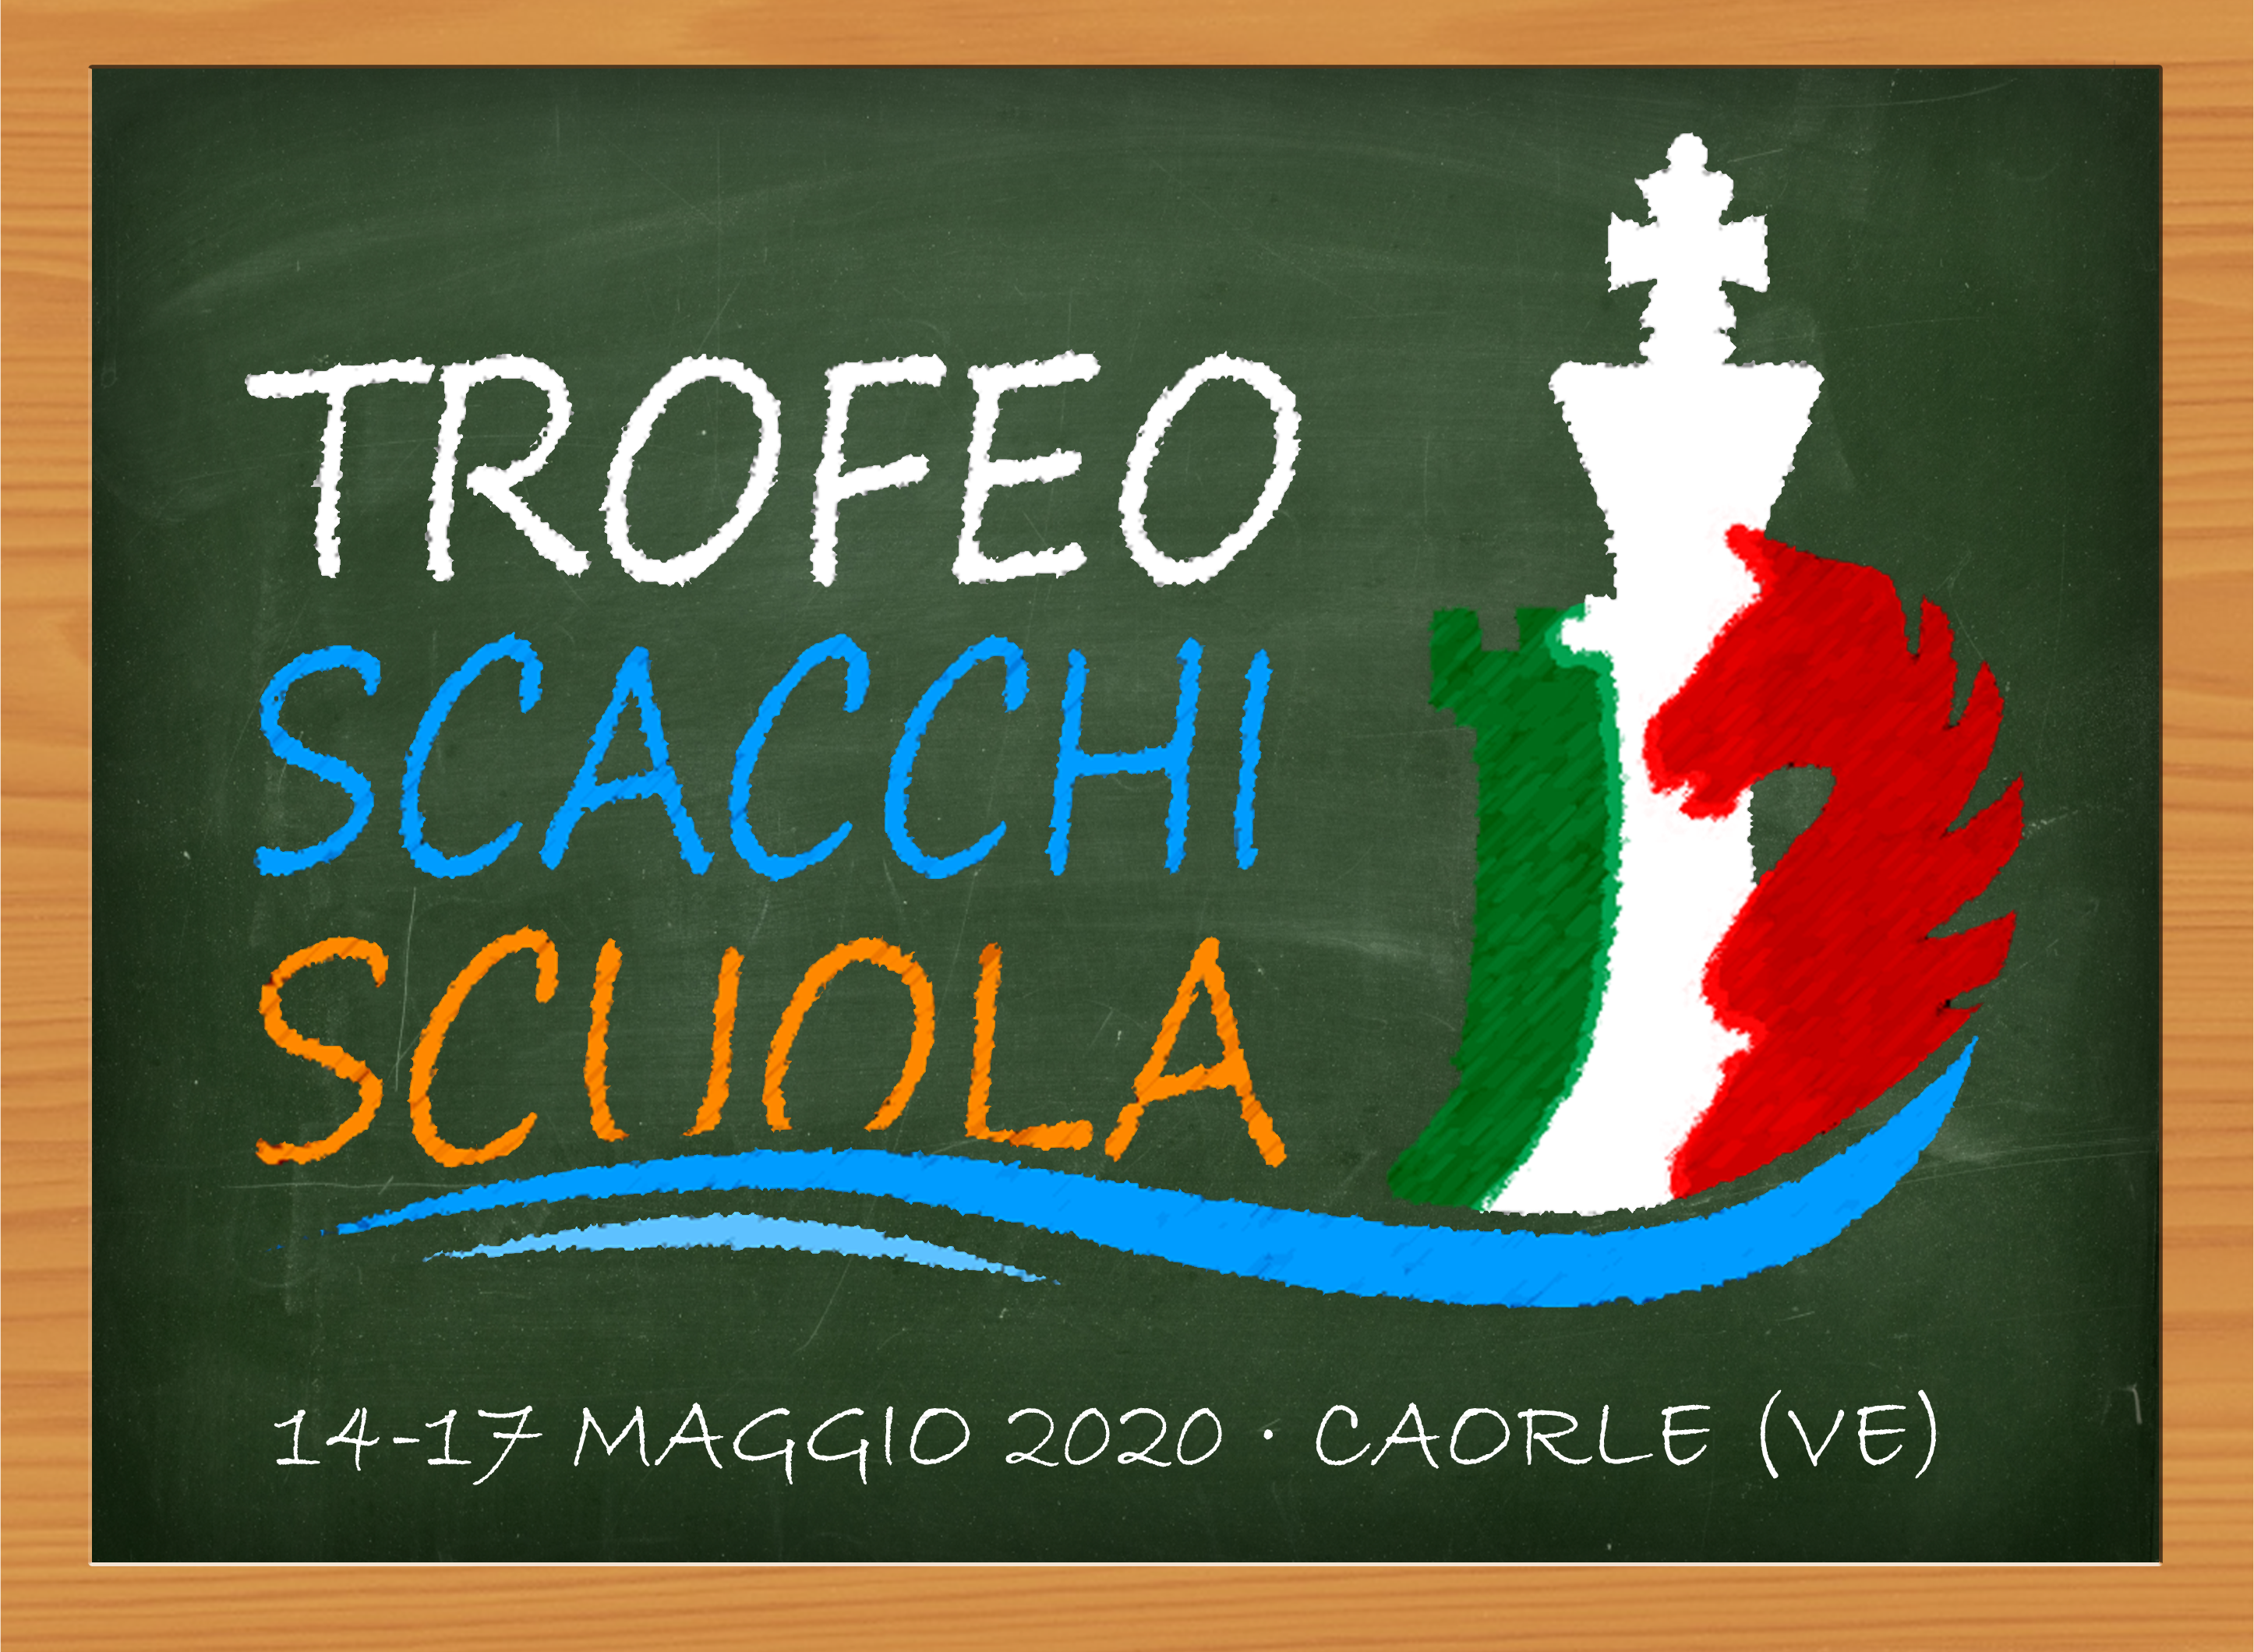 Trofeo Scacchi Scuola 2020